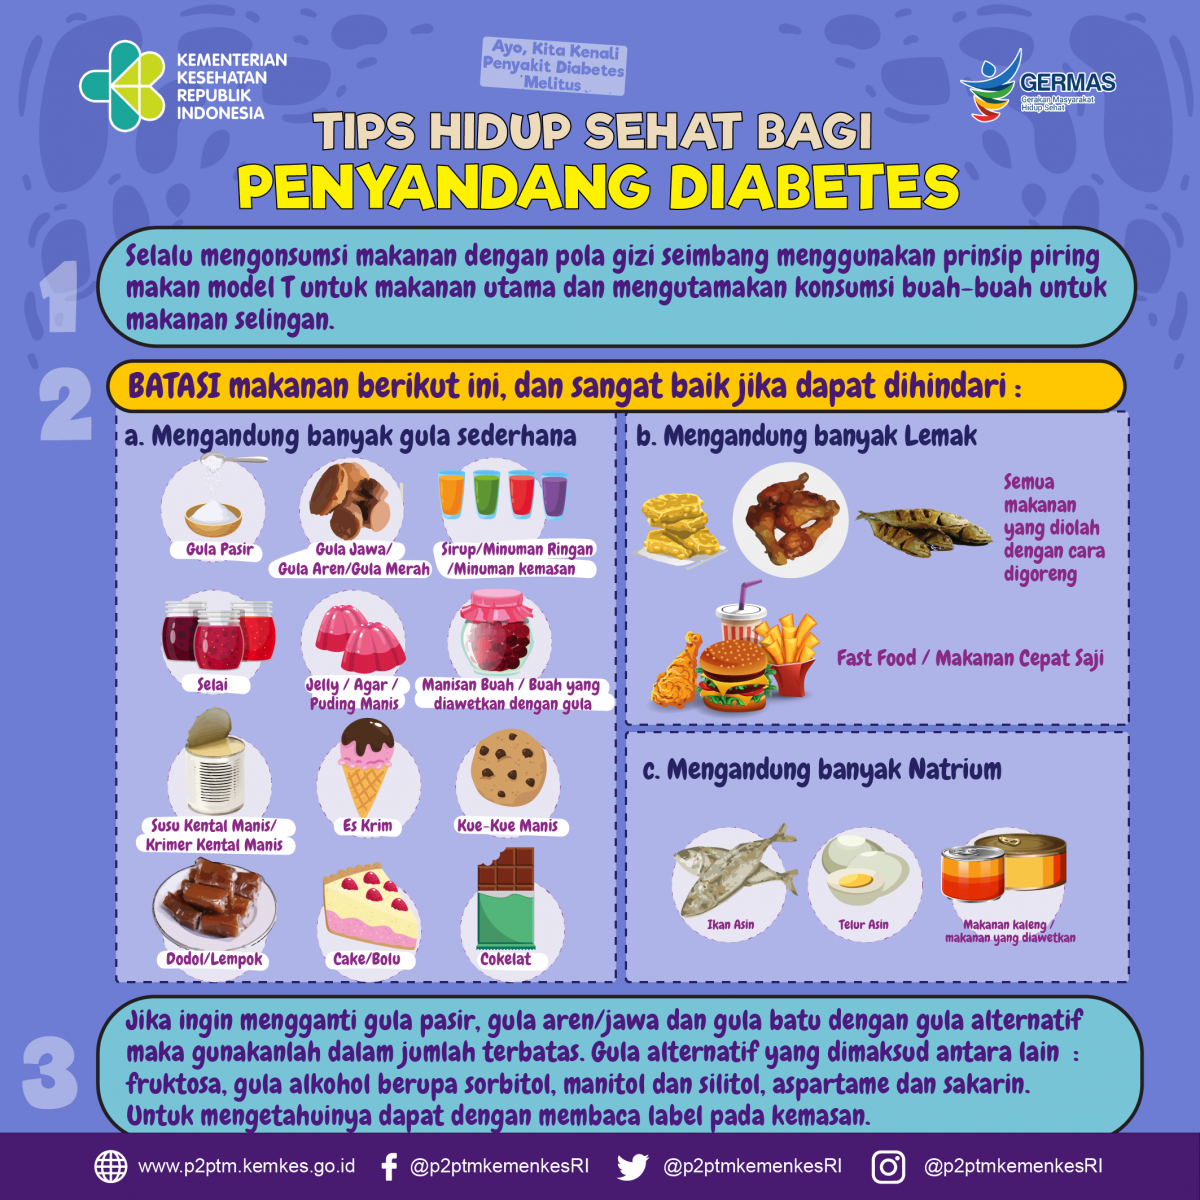 Tips Hidup Sehat Bagi Penyandang Diabetes - Direktorat P2PTM